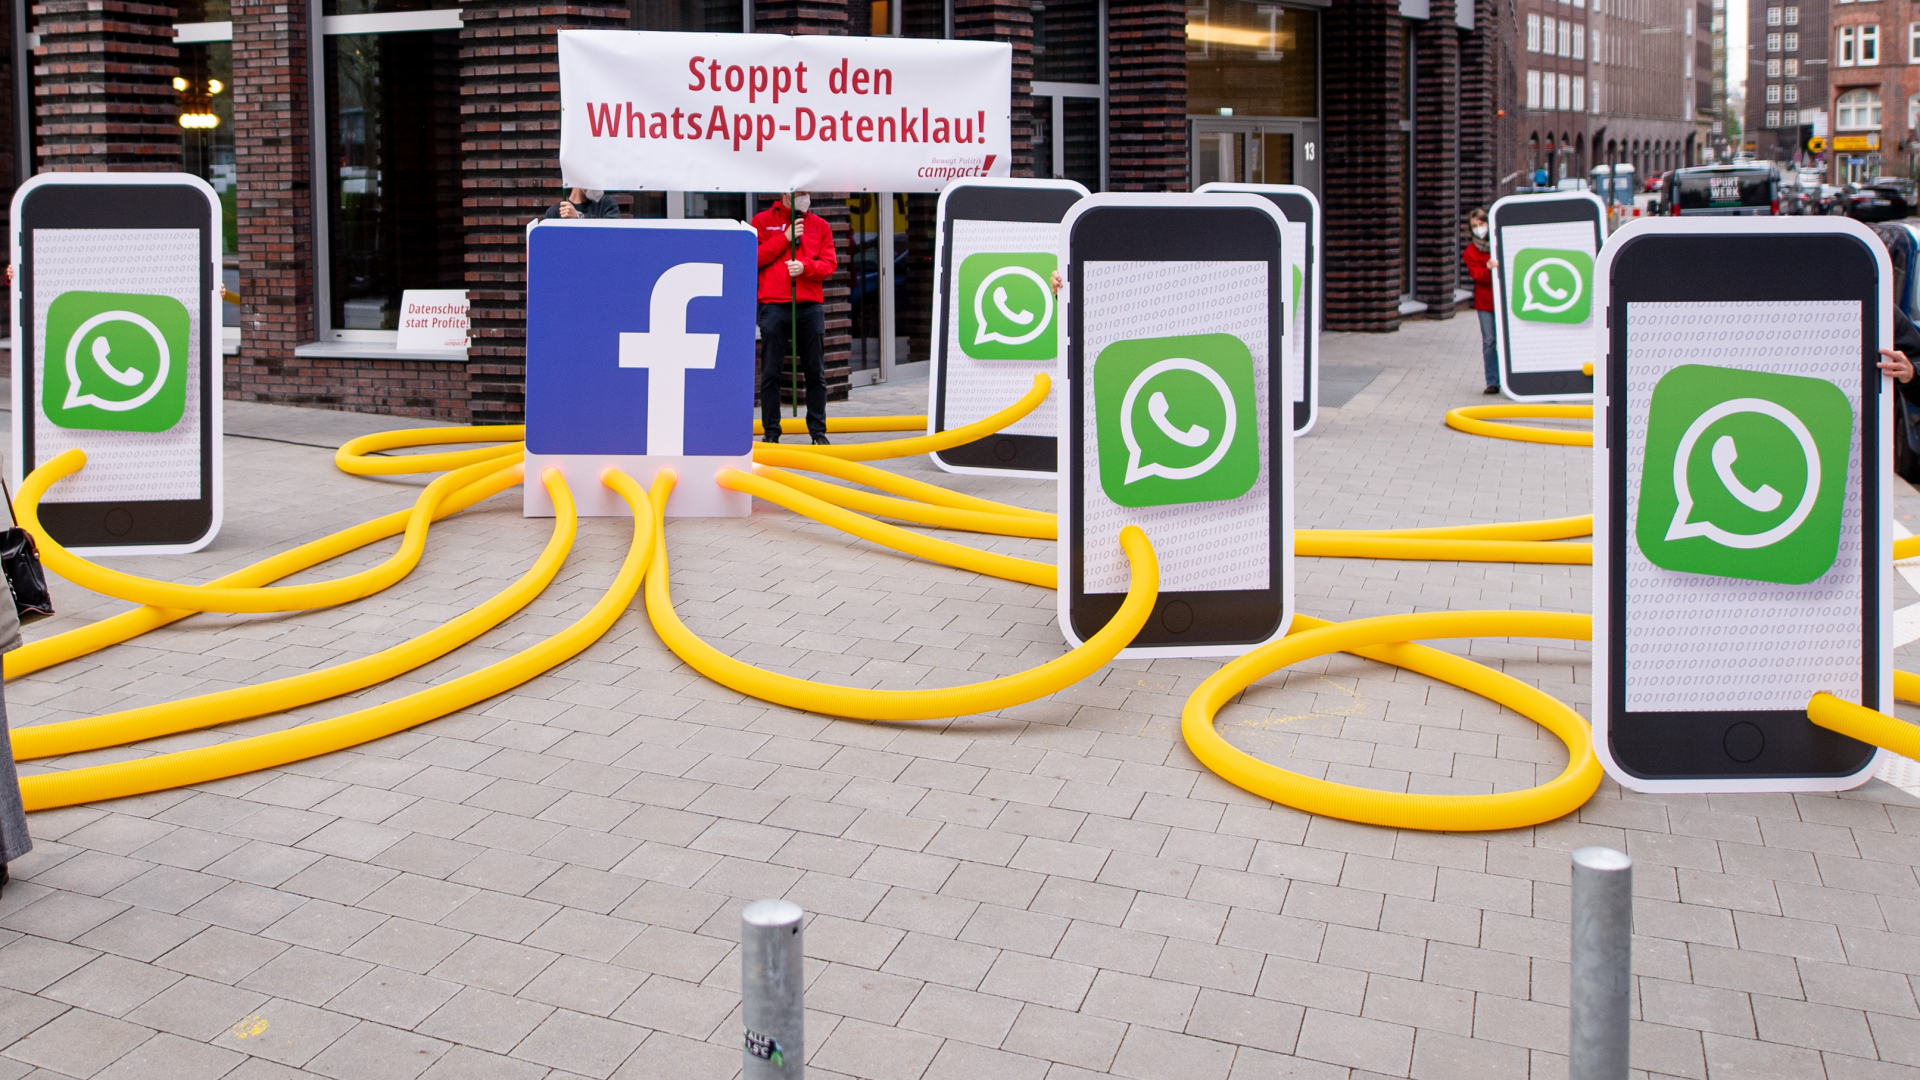 Modelle von Smartphones mit großen WhatsApp-Logos sind bei einer Protestaktion auf einer Straße aufgebaut | dpa